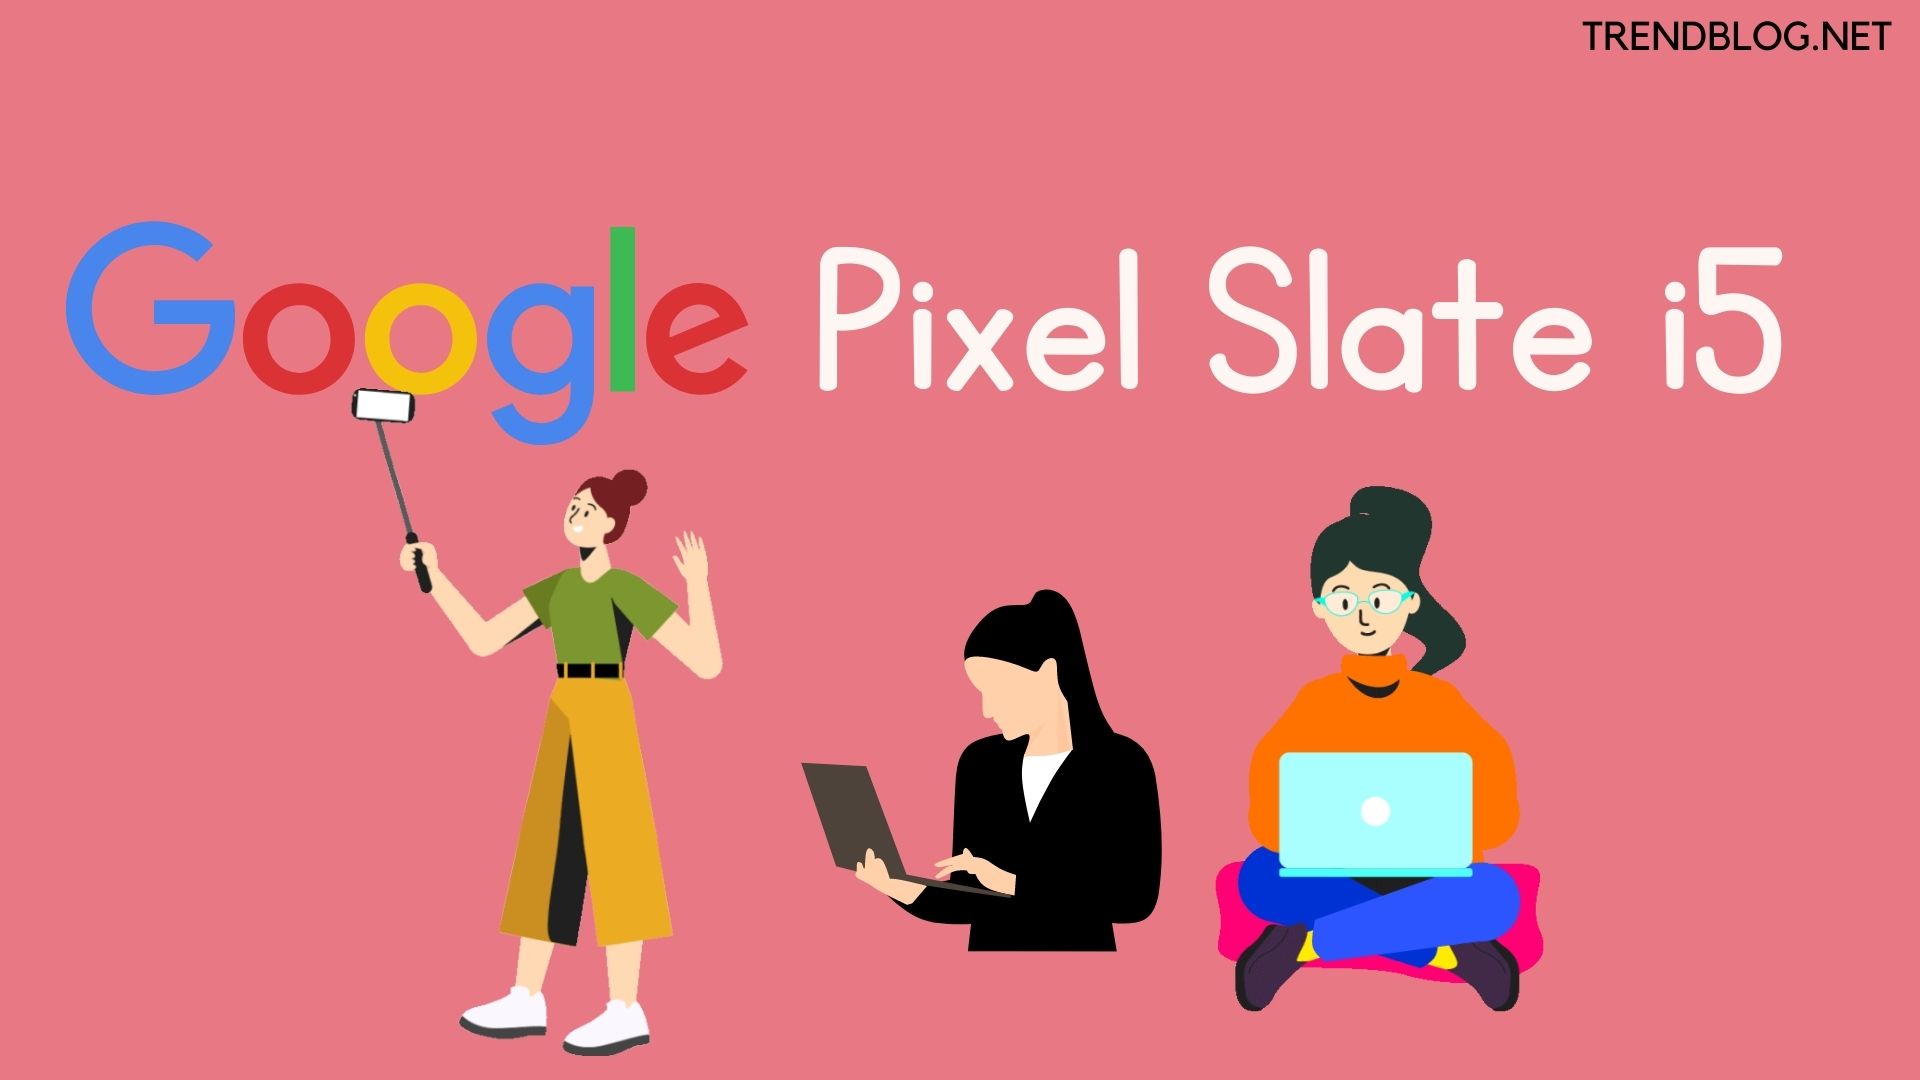 Google Pixel Slate i5